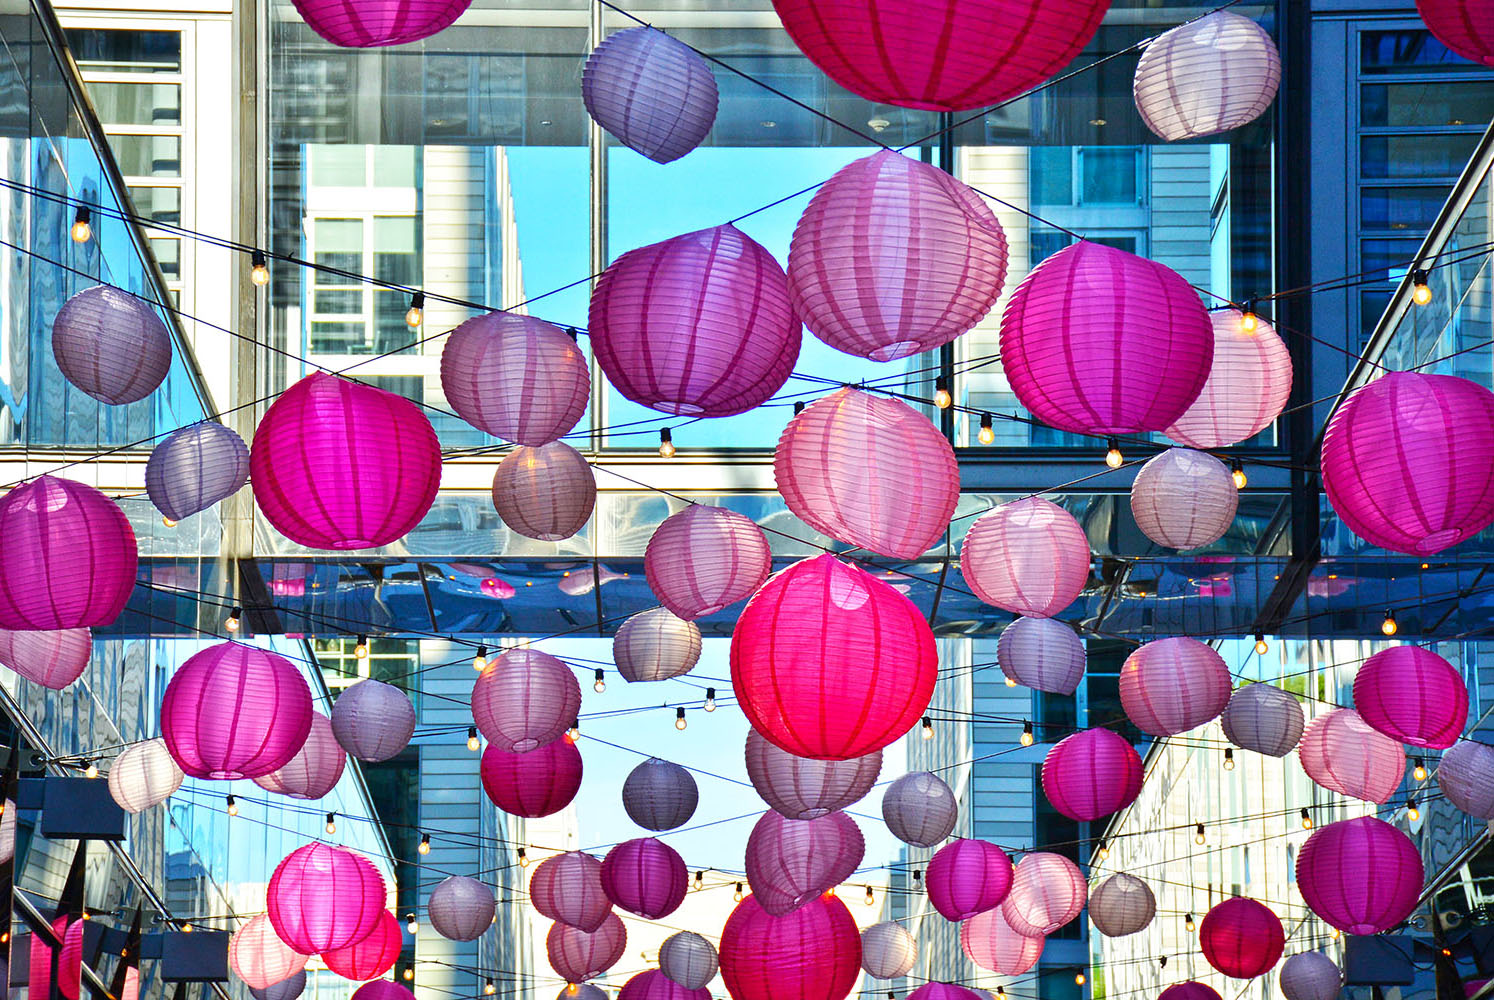 Cherry_Blossom_Festival_Pink_Lanterns_Palmer_Alley_WashingtonDC.jpg